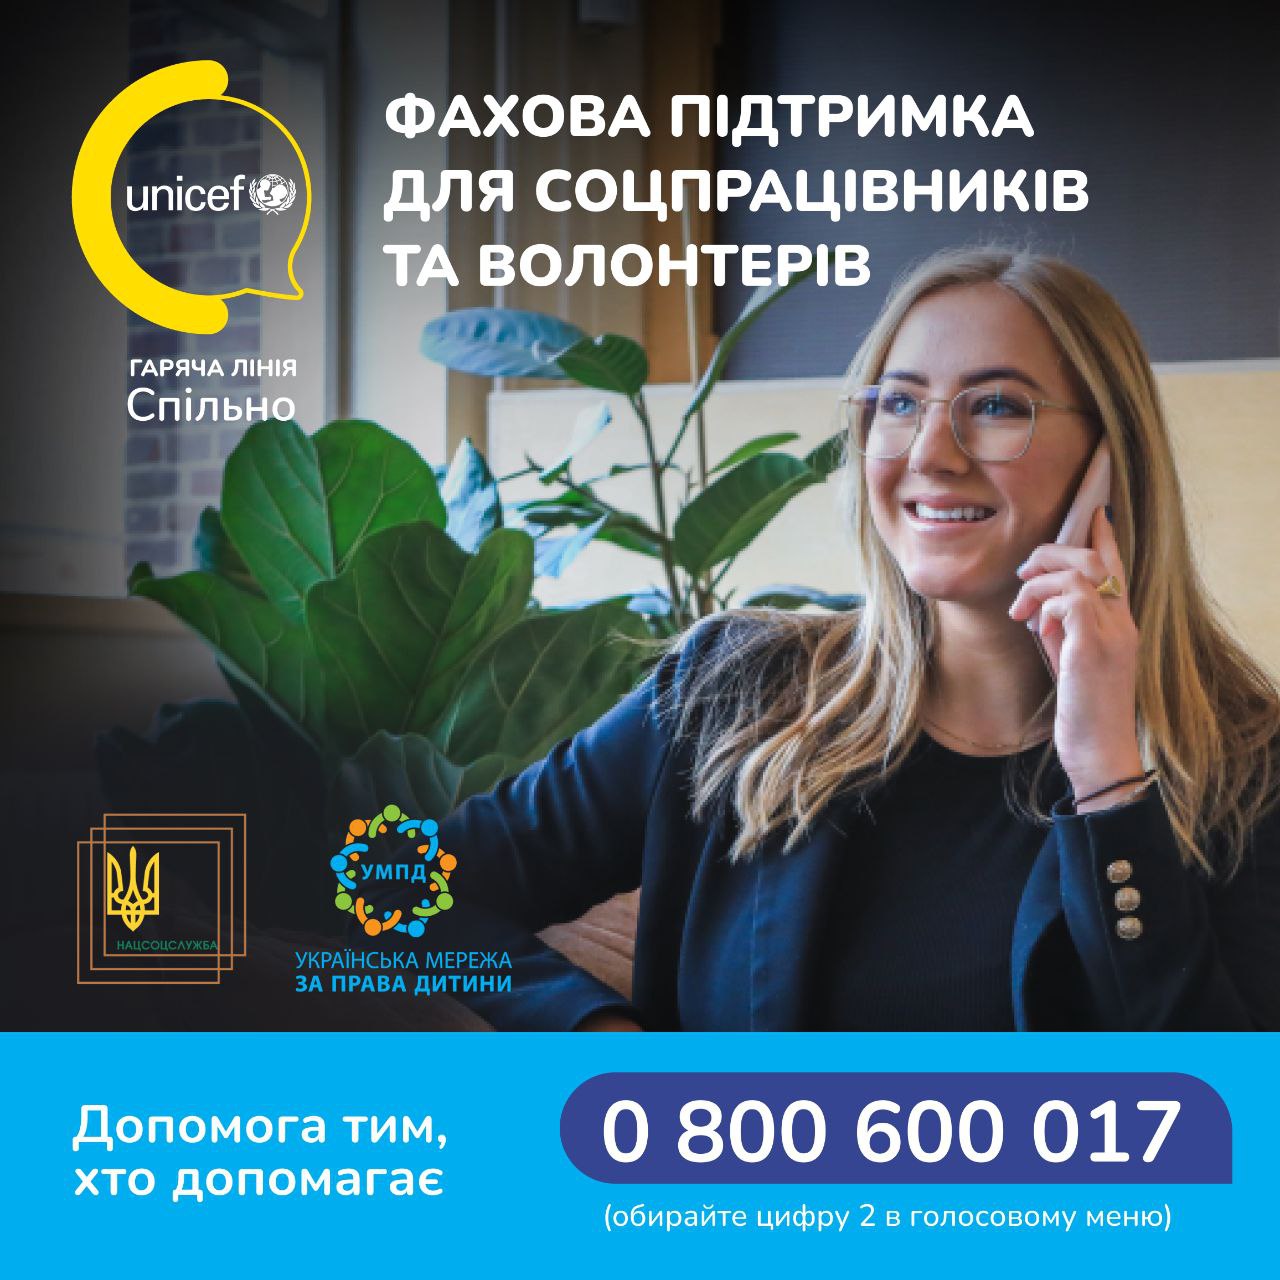 Соціальні працівники та волонтери зможуть отримати професійну підтримку на гарячій лінії UNICEF Ukraine